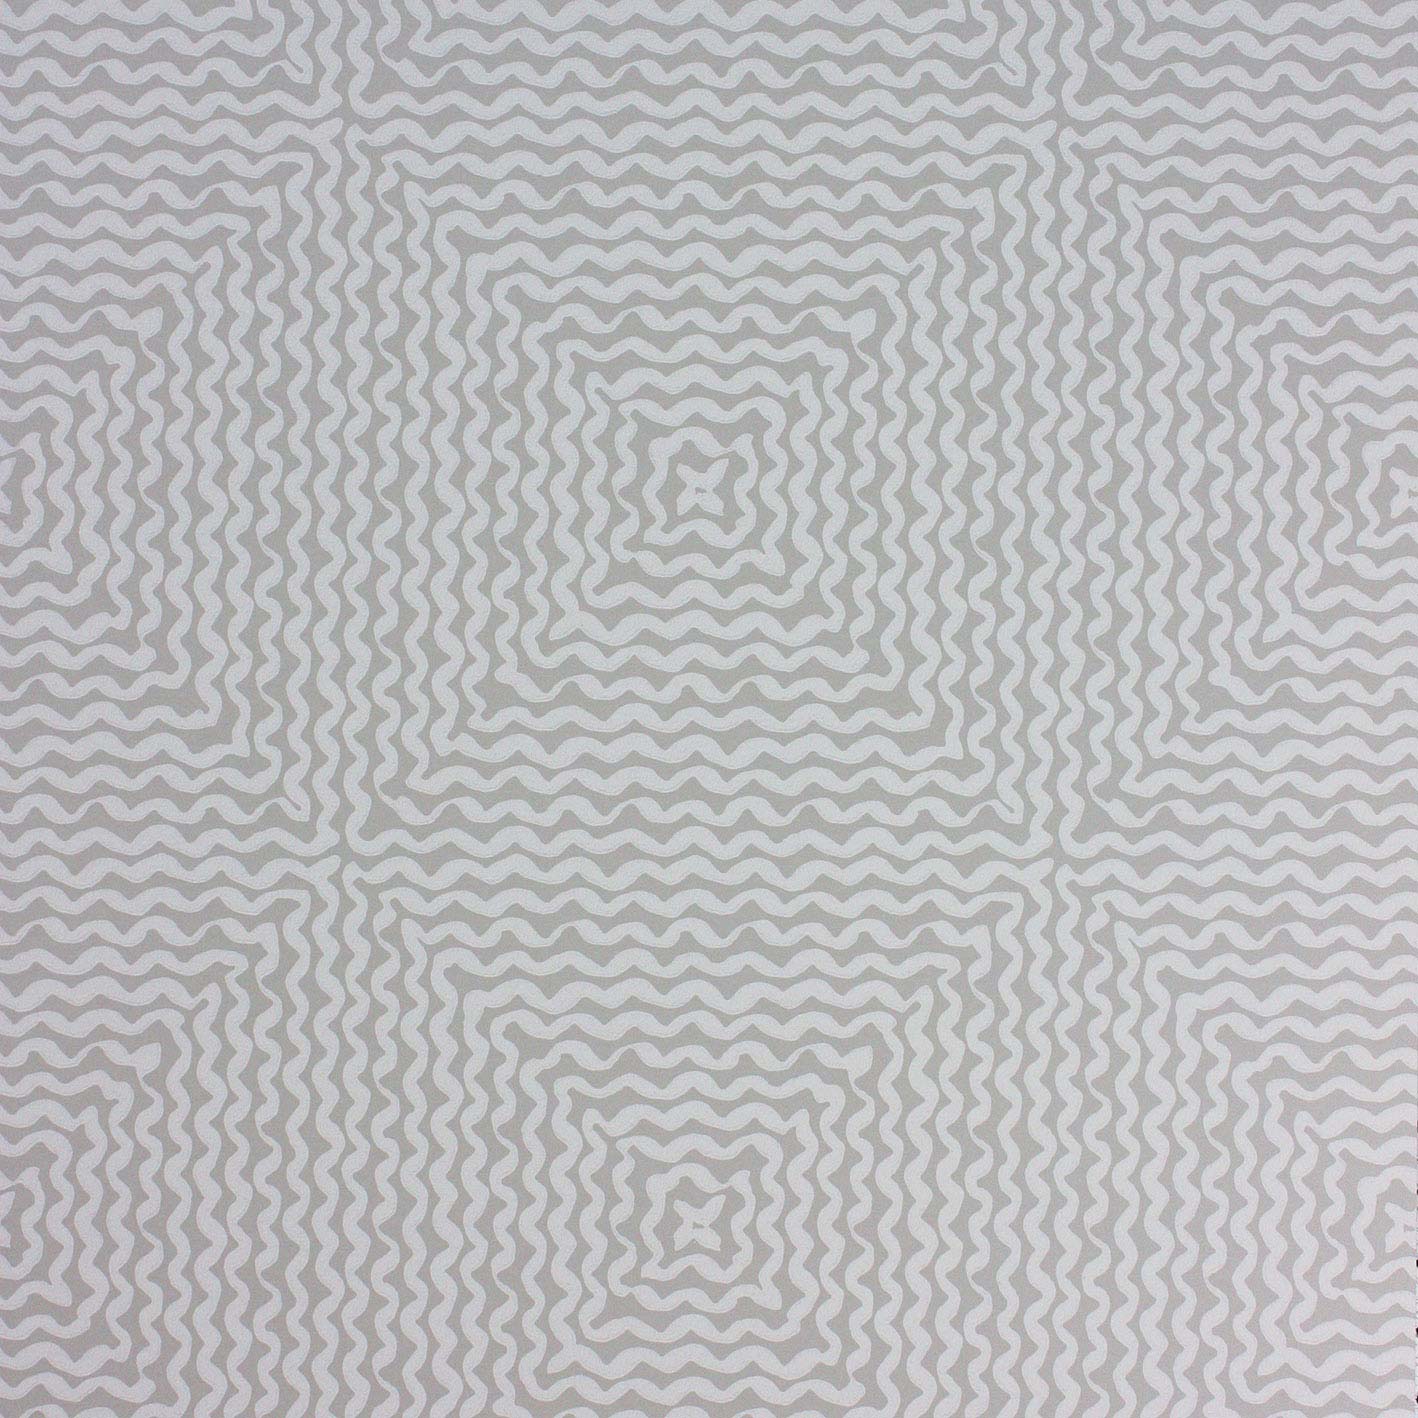 Nina Campbell Wallpaper - Les Rêves Mourlot Grey NCW4302-01